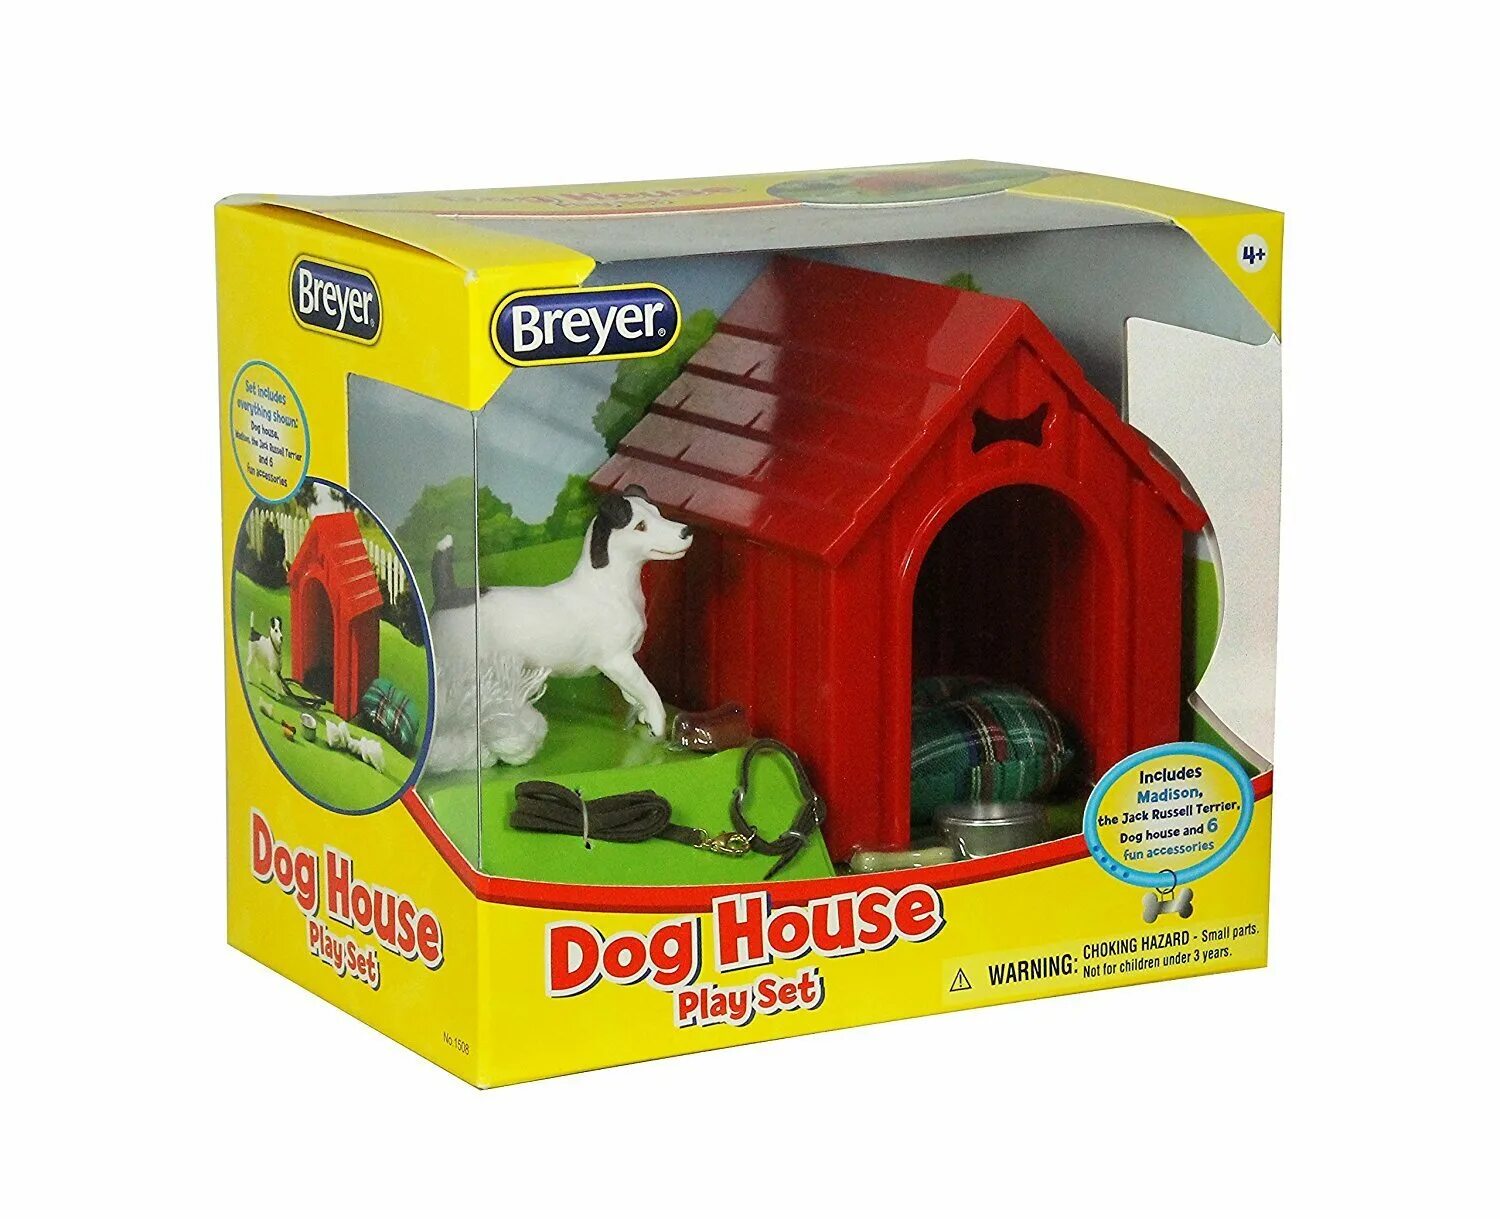 Игрушки Dog House. Игровой набор Breyer собачий домик. Игровой набор doggy House. Doggy House игровой набор самолёт. Играть в дог хаус dogs house net